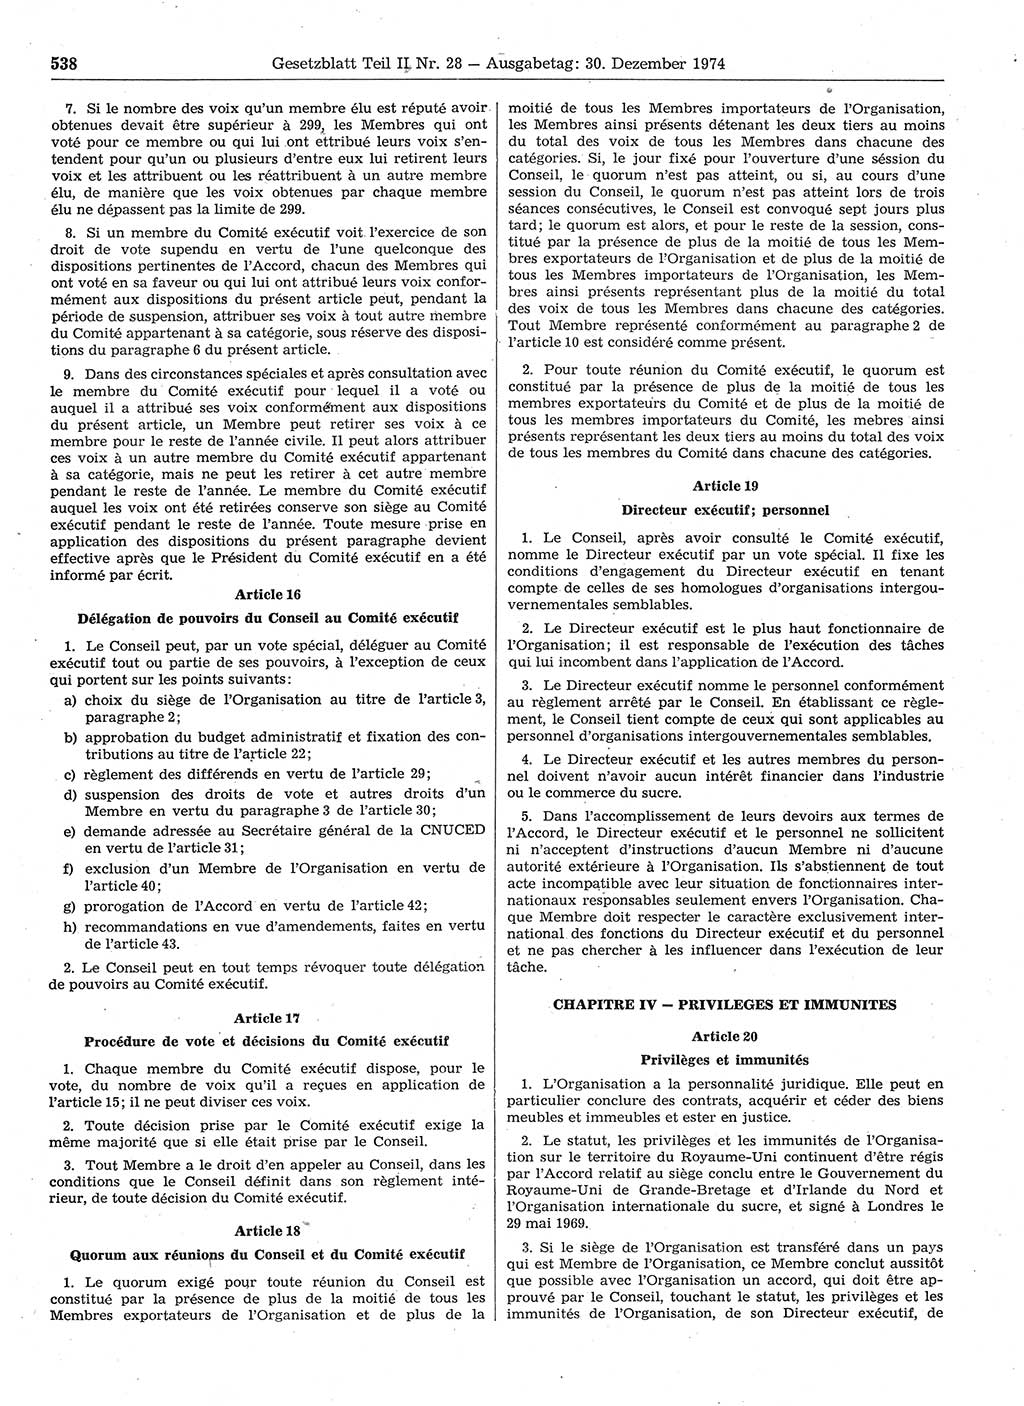 Gesetzblatt (GBl.) der Deutschen Demokratischen Republik (DDR) Teil ⅠⅠ 1974, Seite 538 (GBl. DDR ⅠⅠ 1974, S. 538)